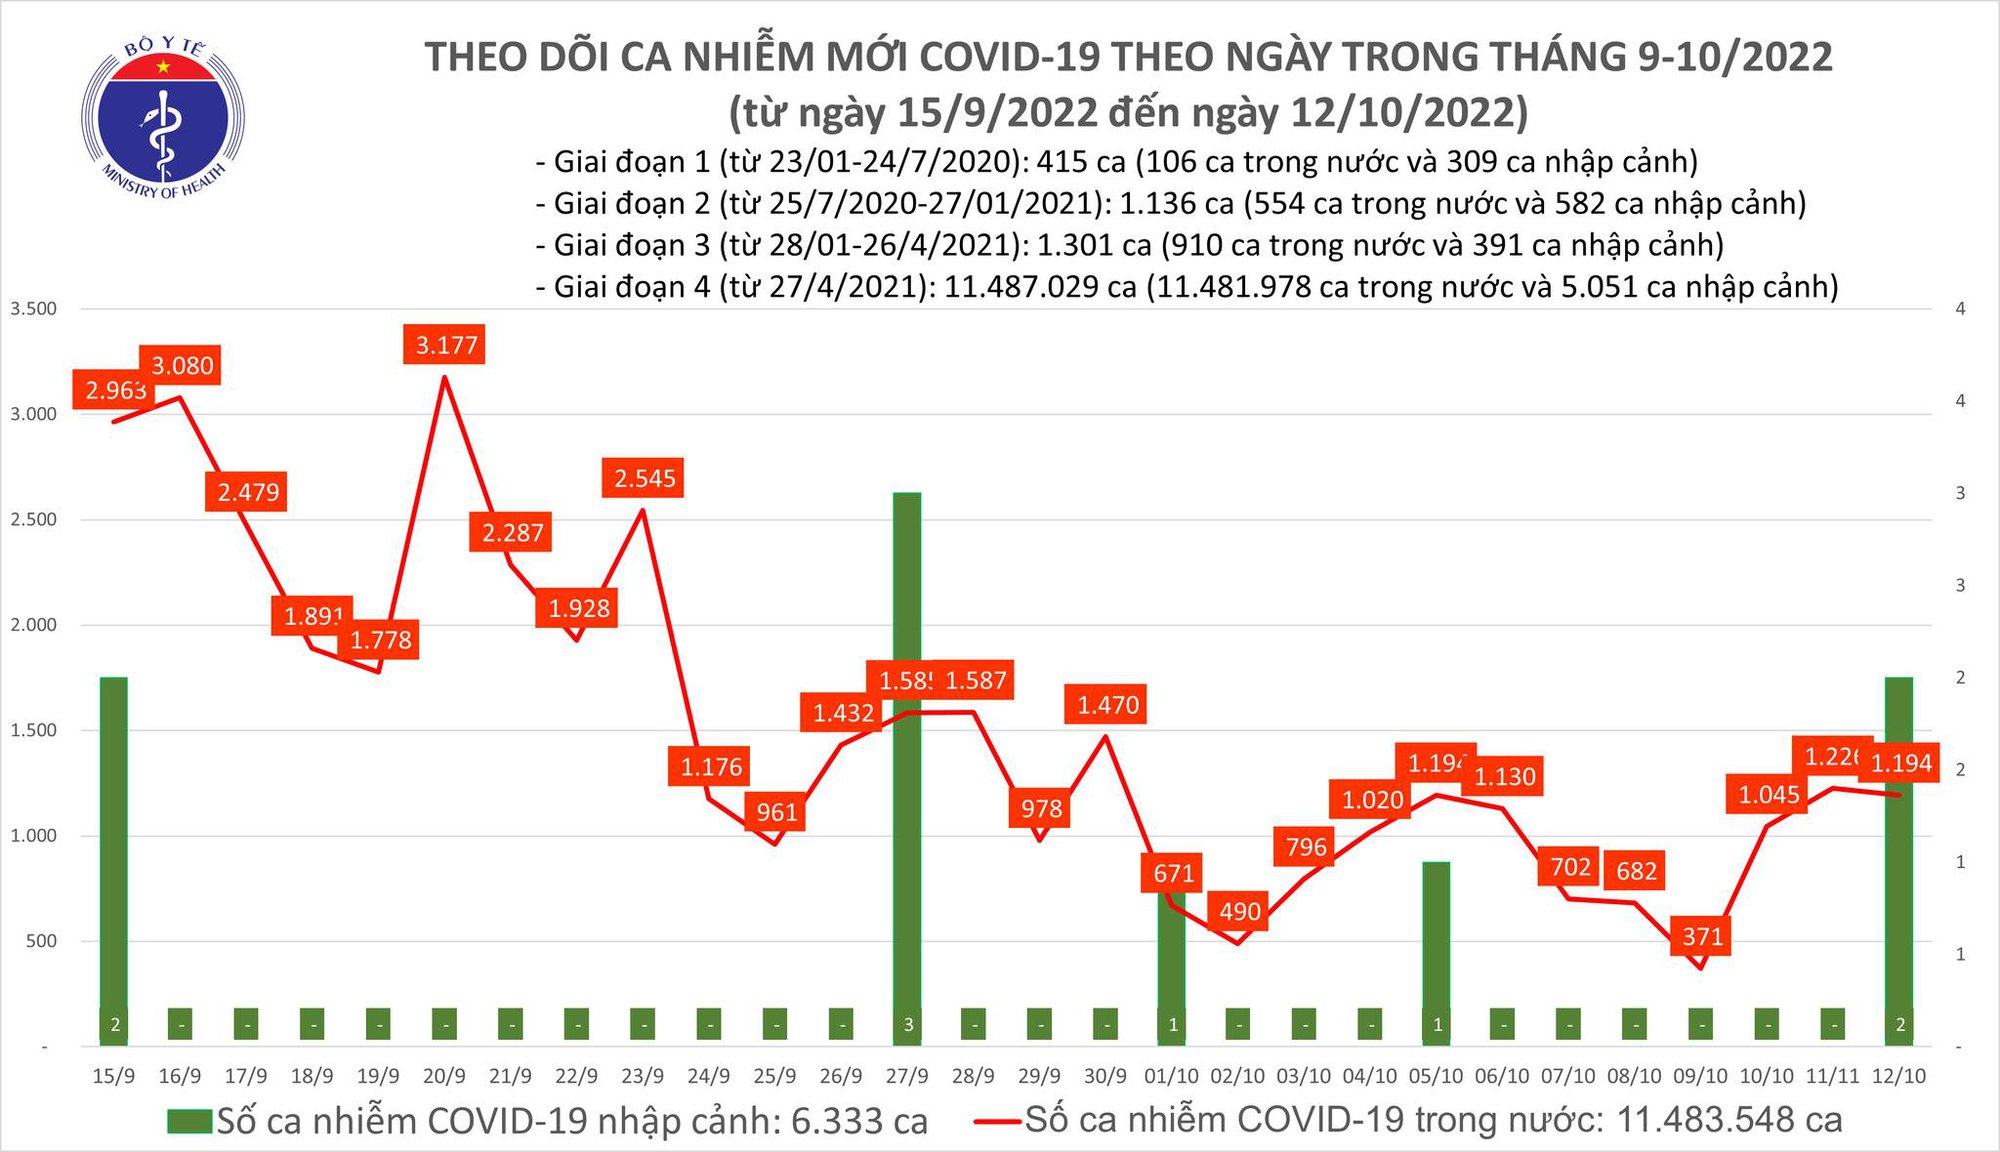 Ngày 12/10: Có gần 1.200 ca COVID-19 mới, 1 bệnh nhân ở Hà Nội tử vong - Ảnh 1.